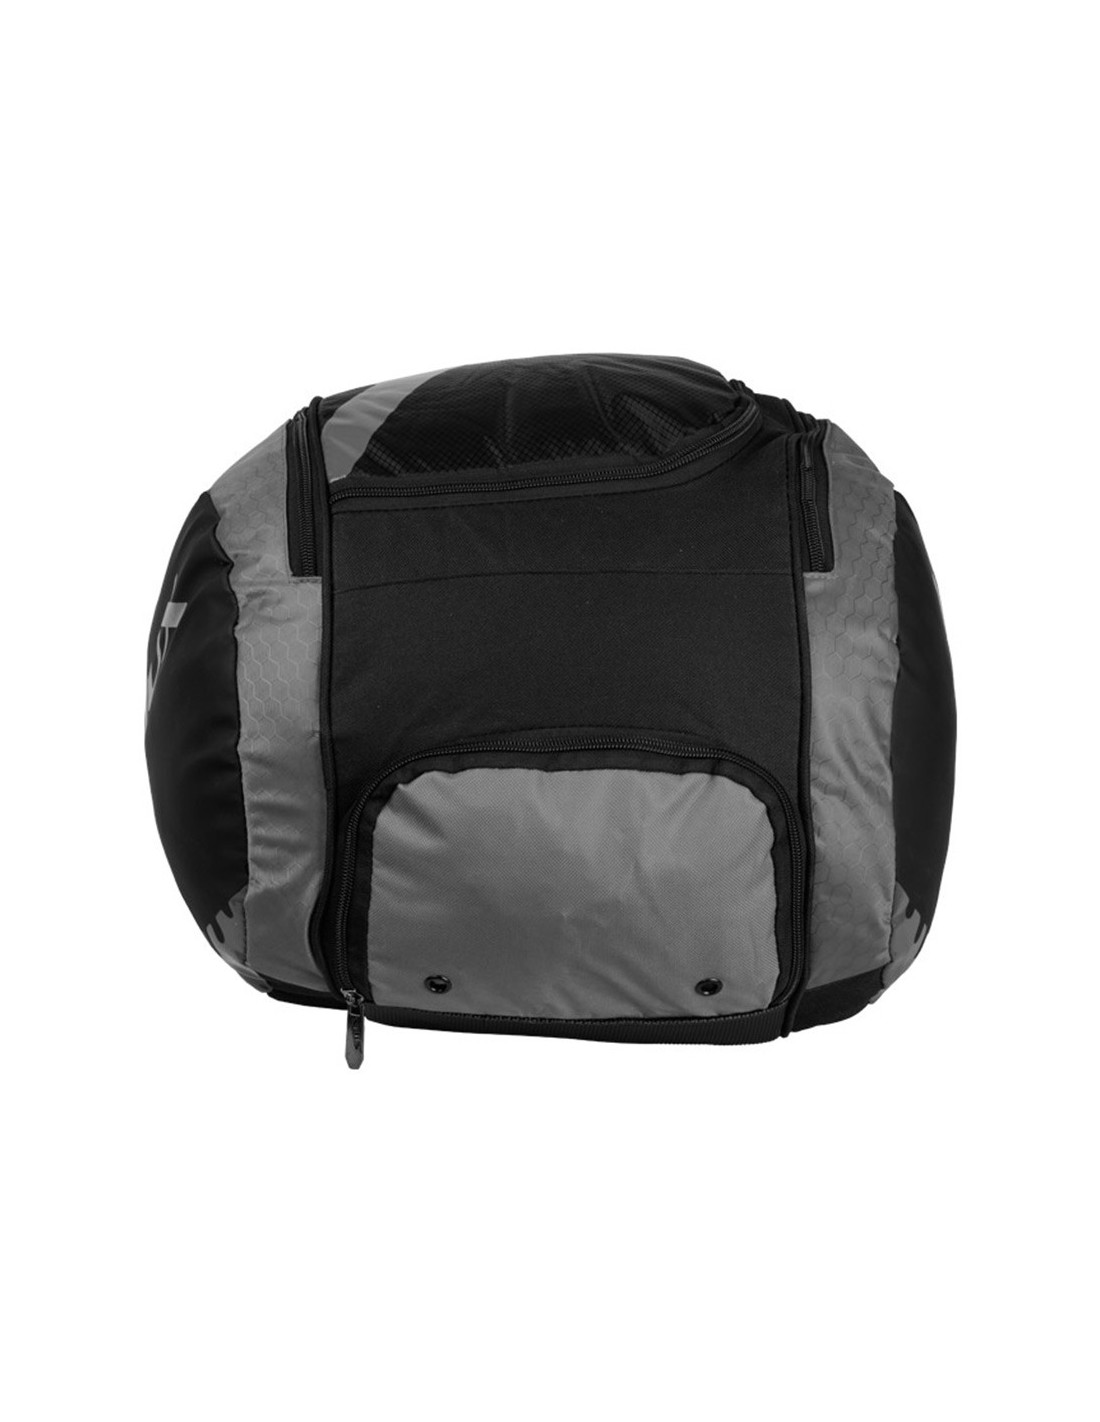 PGM Golf Bag Backbone Club Bag 2kg Ultra Lightweight Portable Fixed Insert  Waterproof Ball Bag - AliExpress